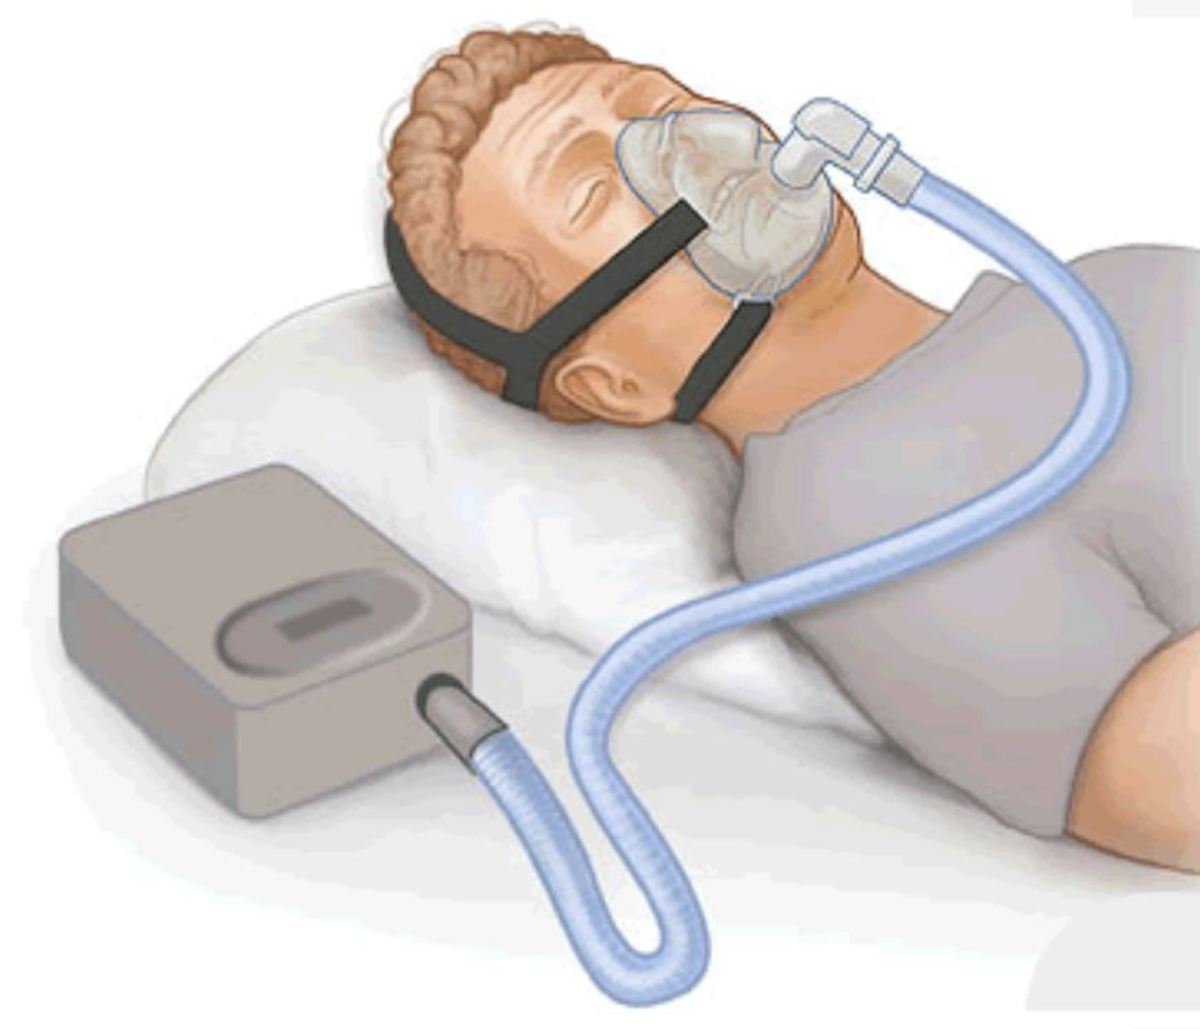 A CPAP Machine